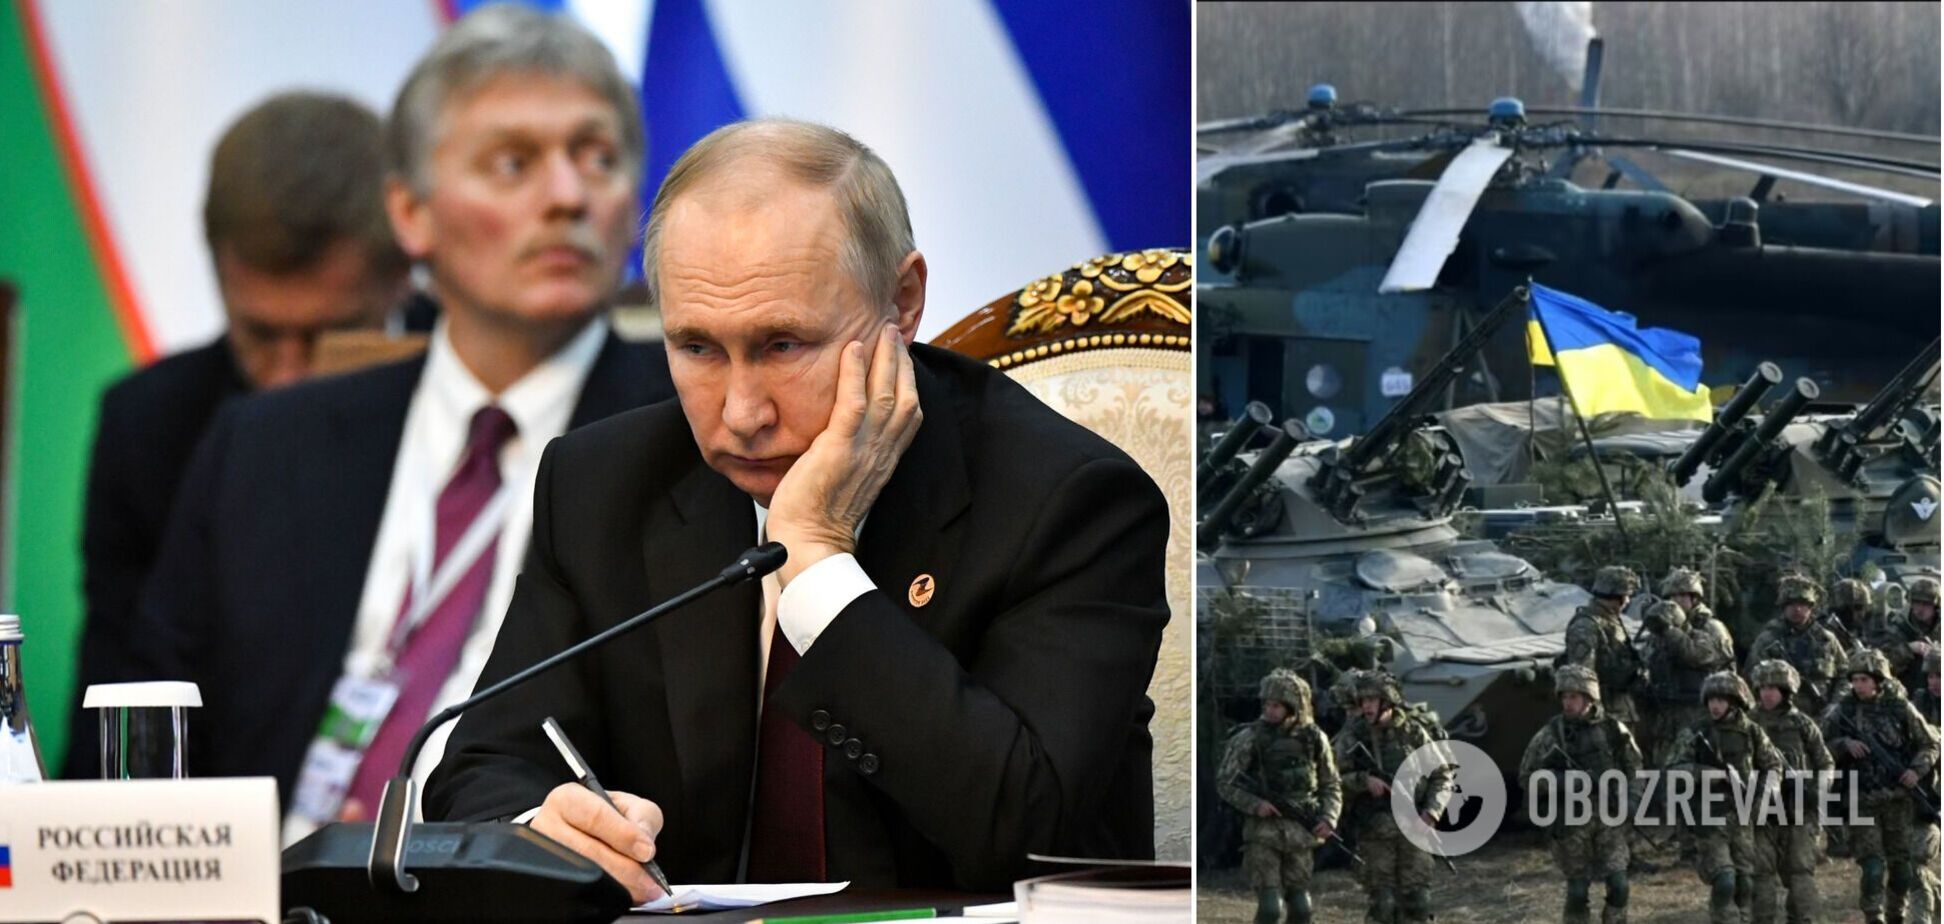 Західний світ об'єднався проти Росії: у Москві починається паніка